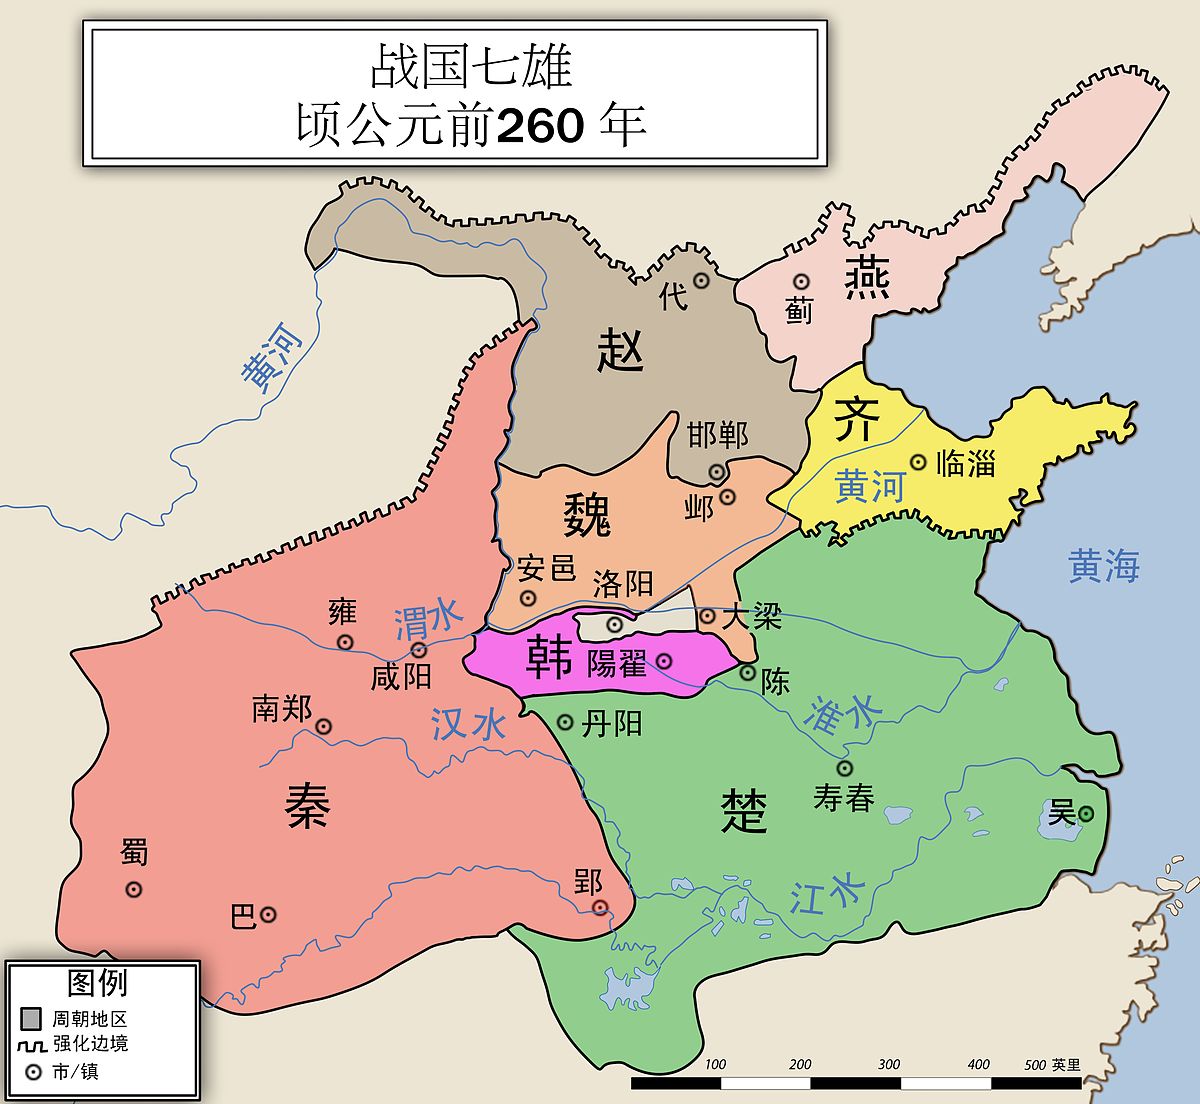 ZH-战国七雄地图.jpg